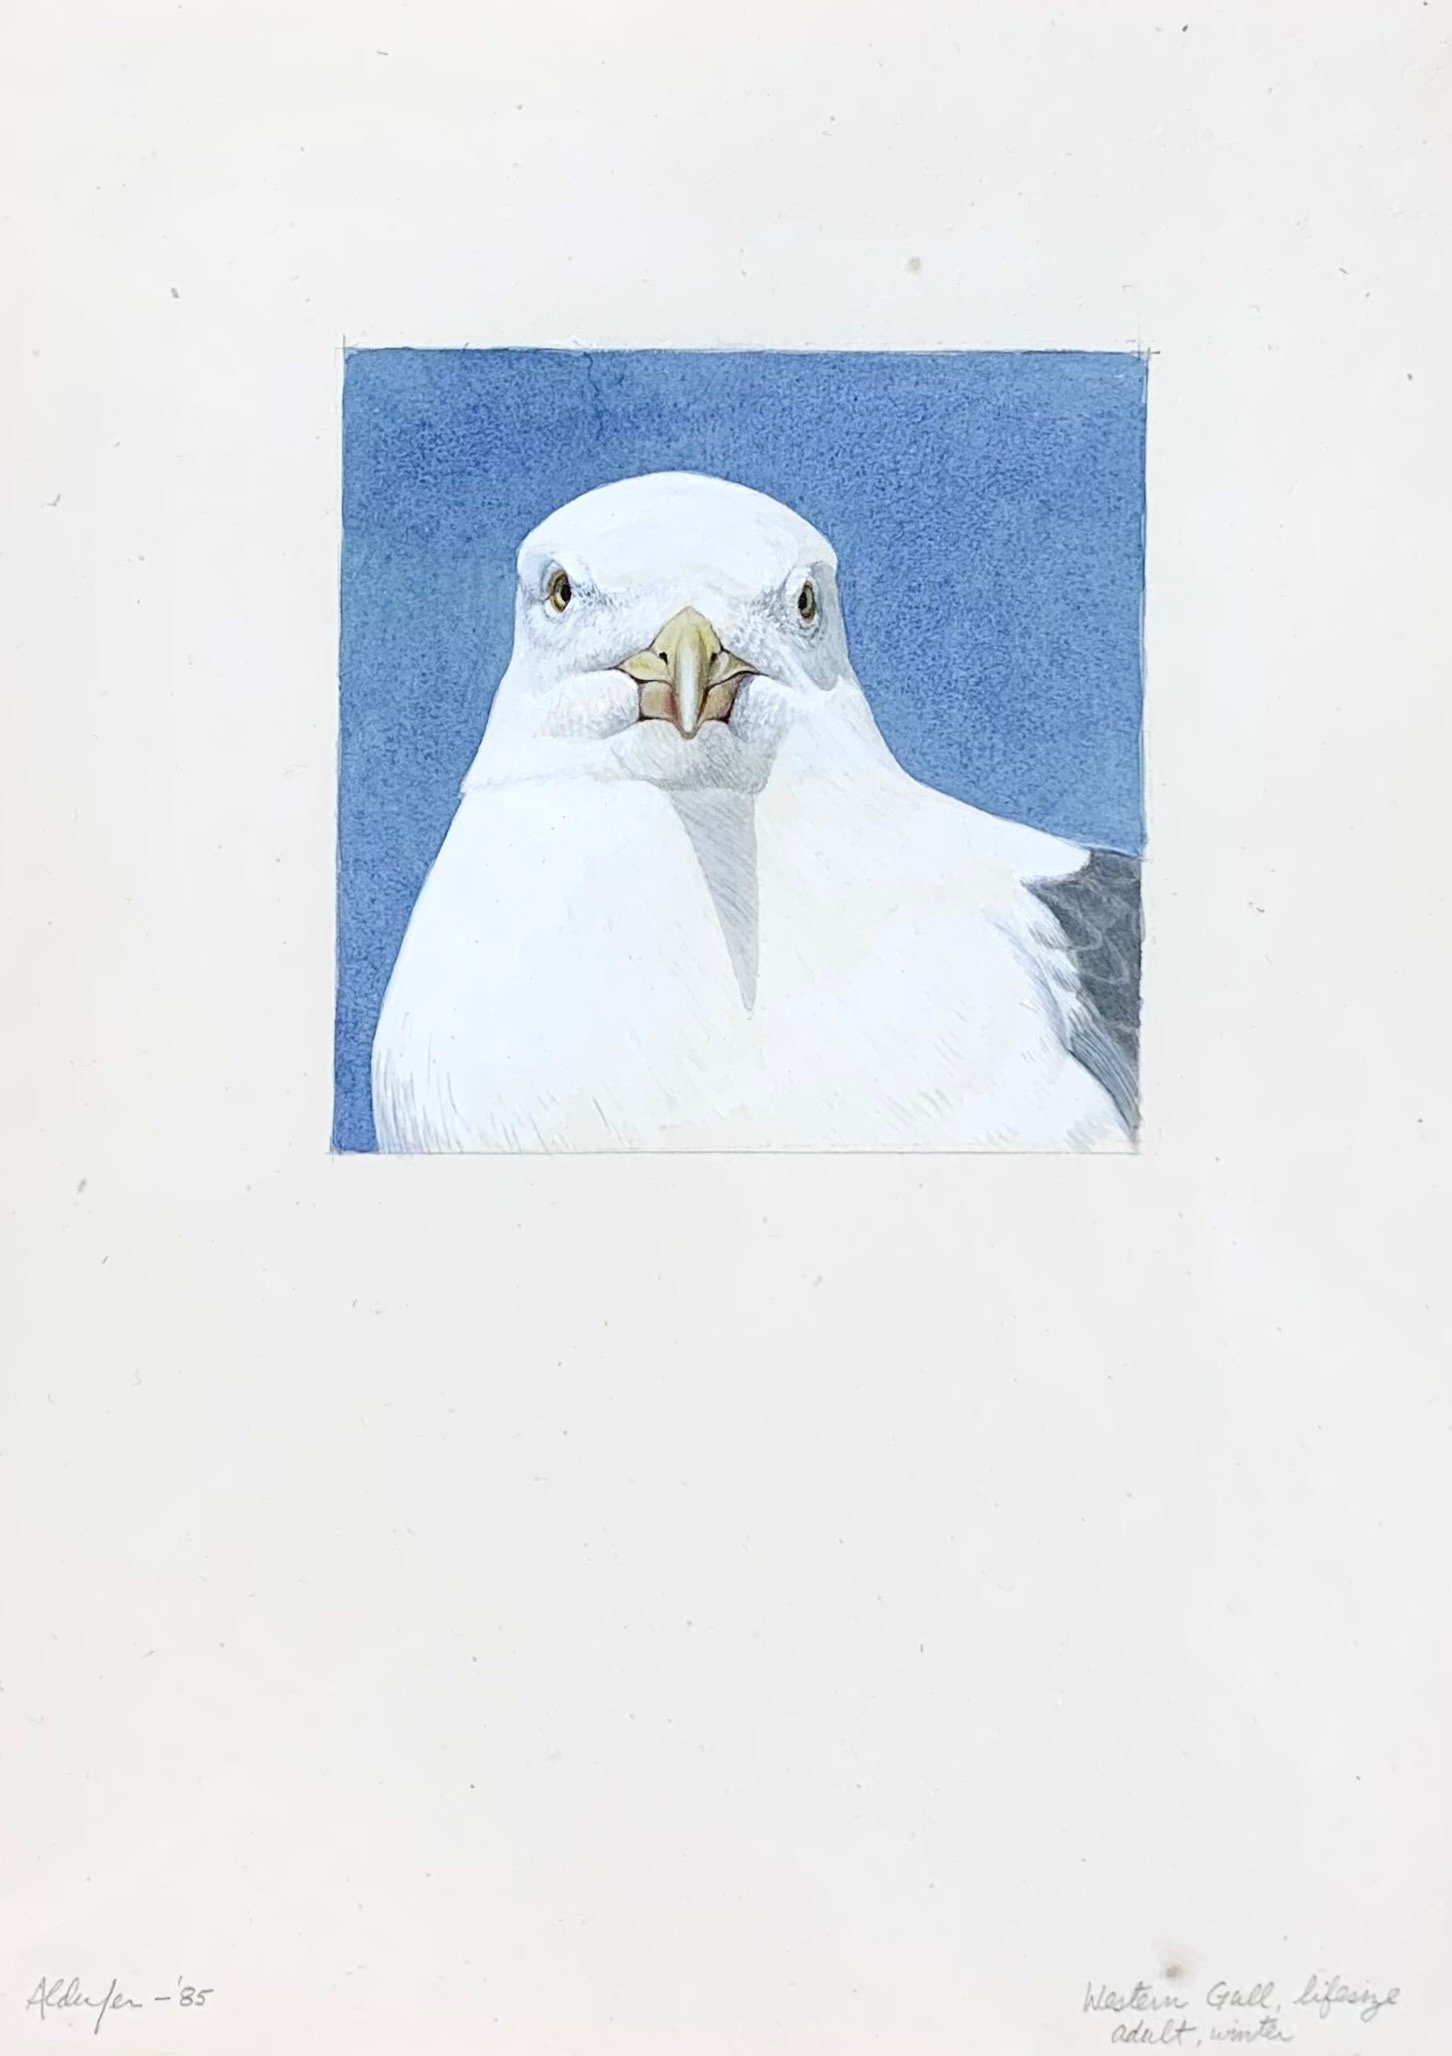 Western Gull, Winter Adult #2, 1985  (Copy)